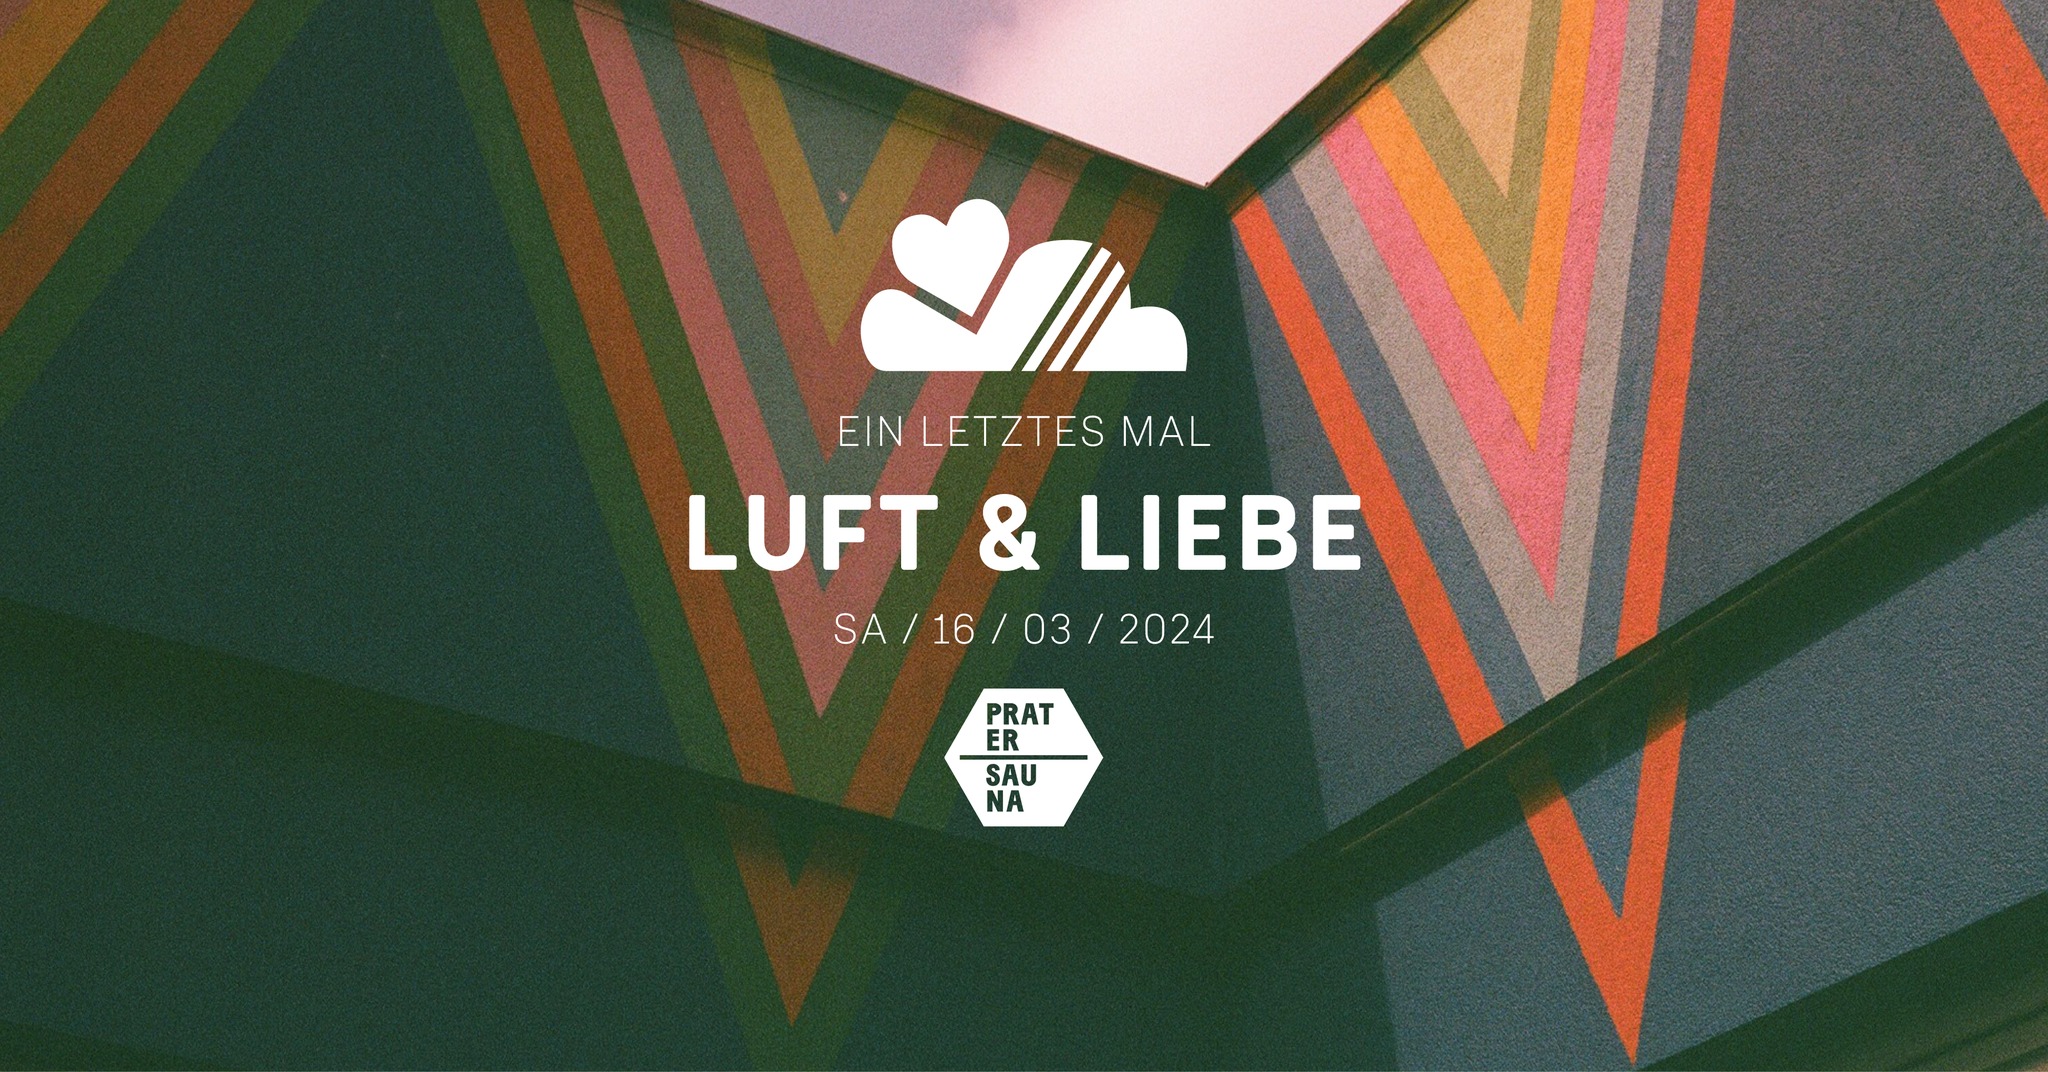 Luft & Liebe am 16. March 2024 @ Pratersauna.